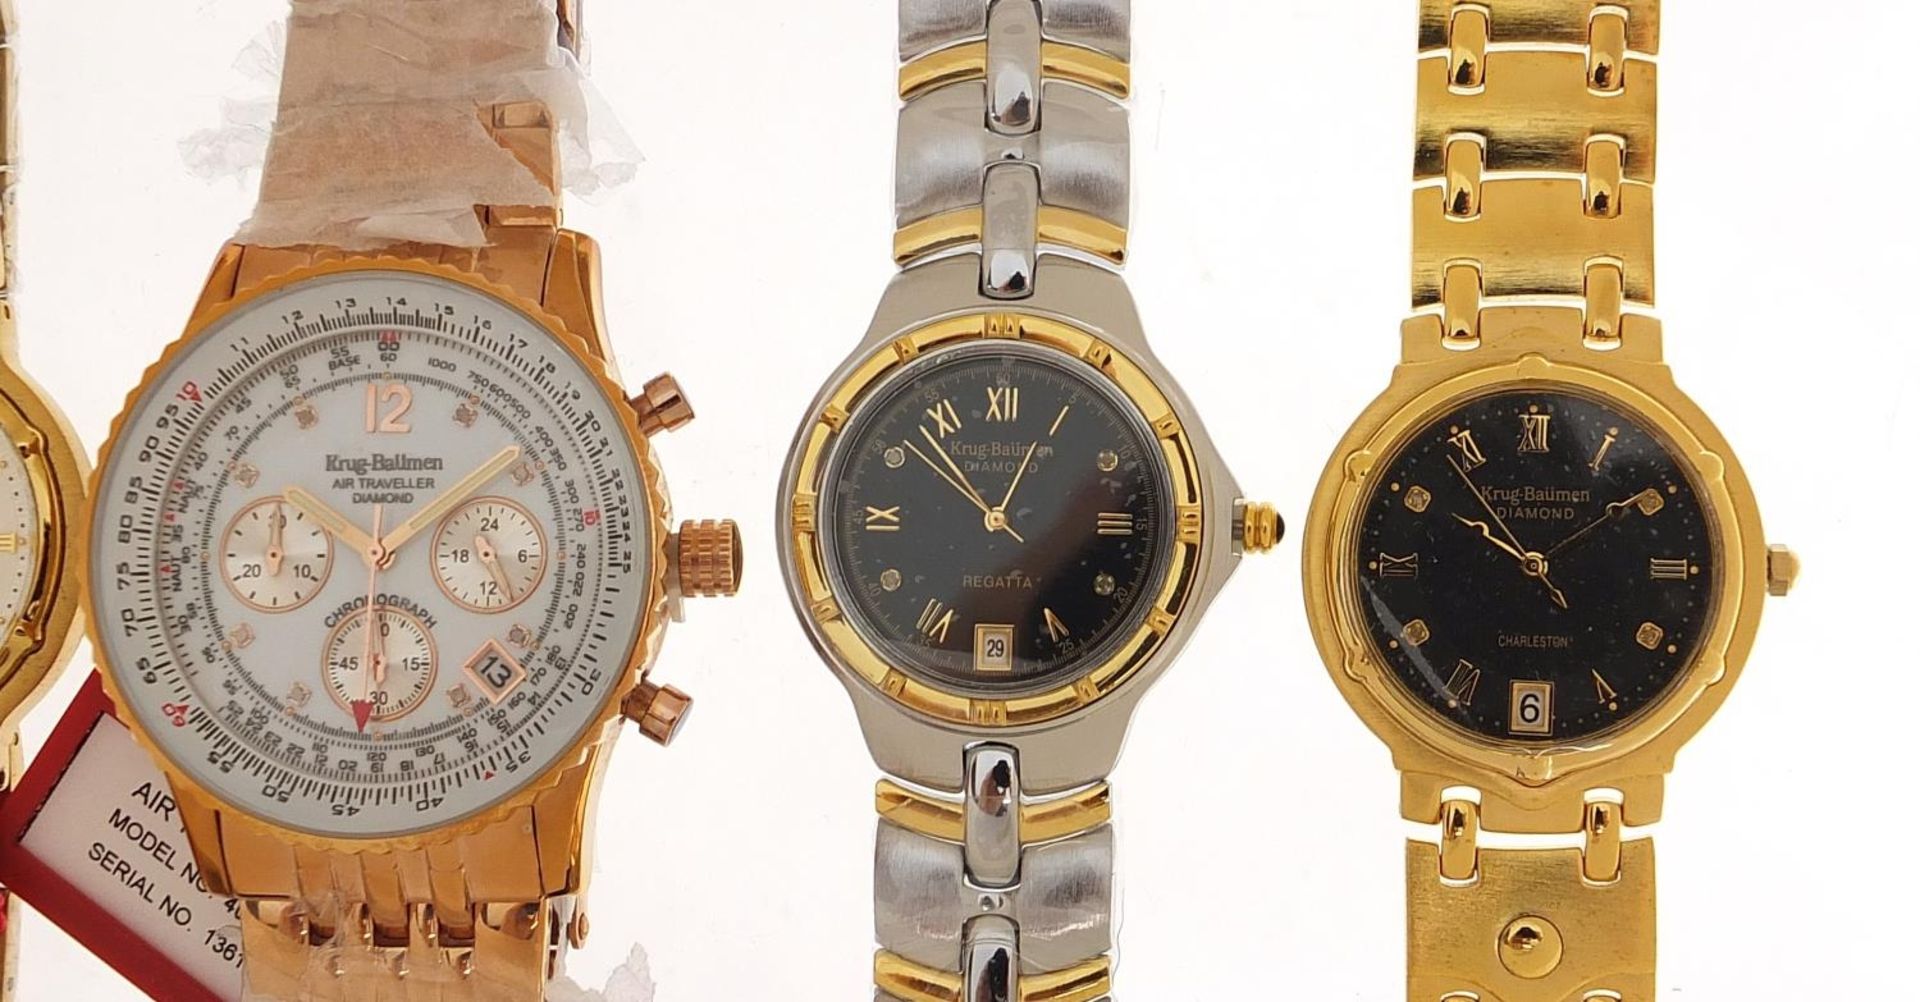 Five gentlemen's & Krug-Baumen diamond wristwatches with boxes comprising Air Traveller Diamond - Bild 3 aus 7